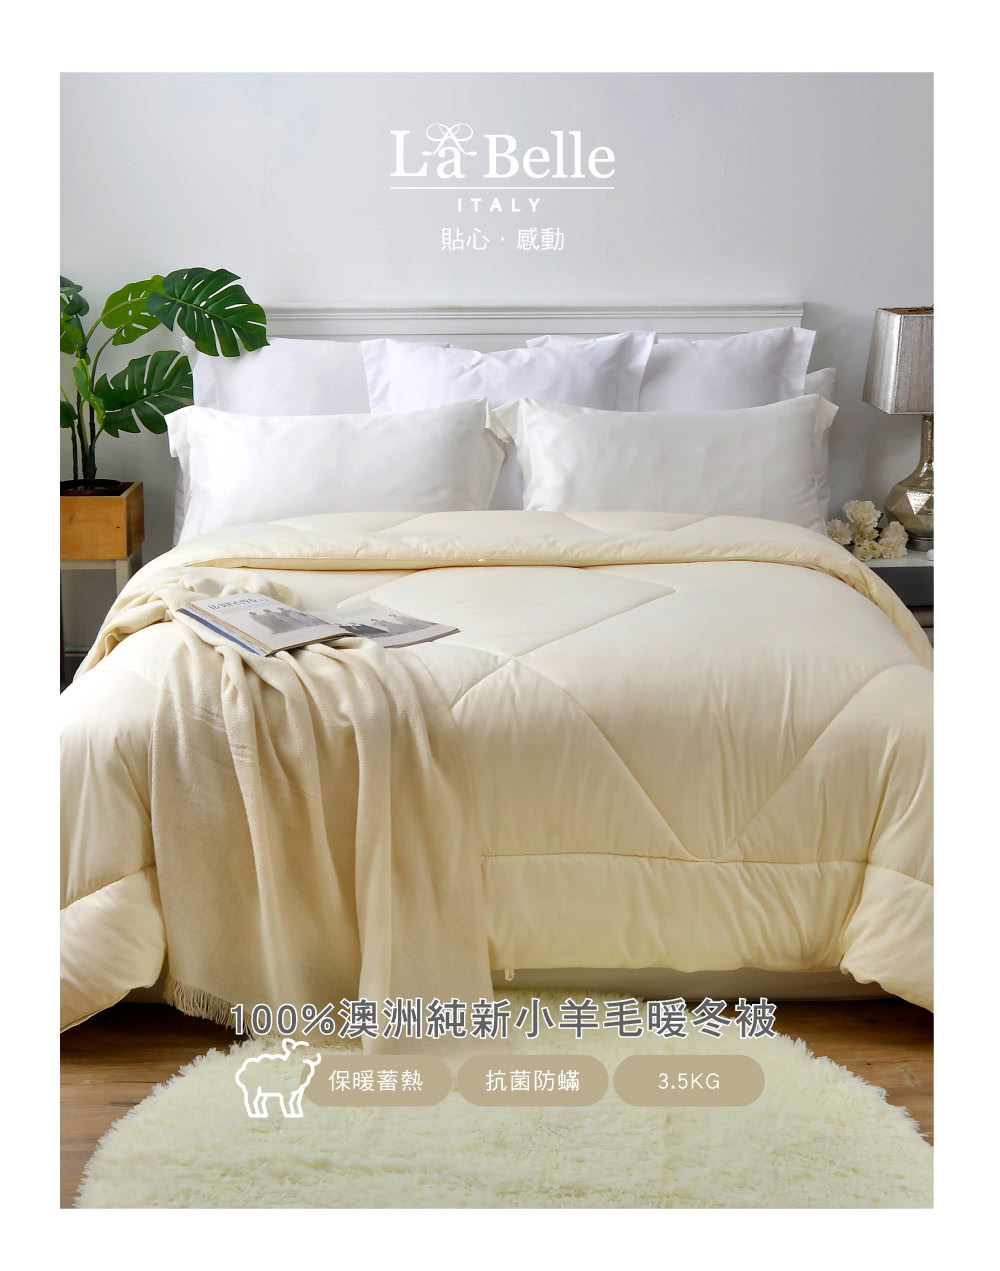 La Belle 100%澳洲純新小羊毛防螨抗菌暖冬被(特大